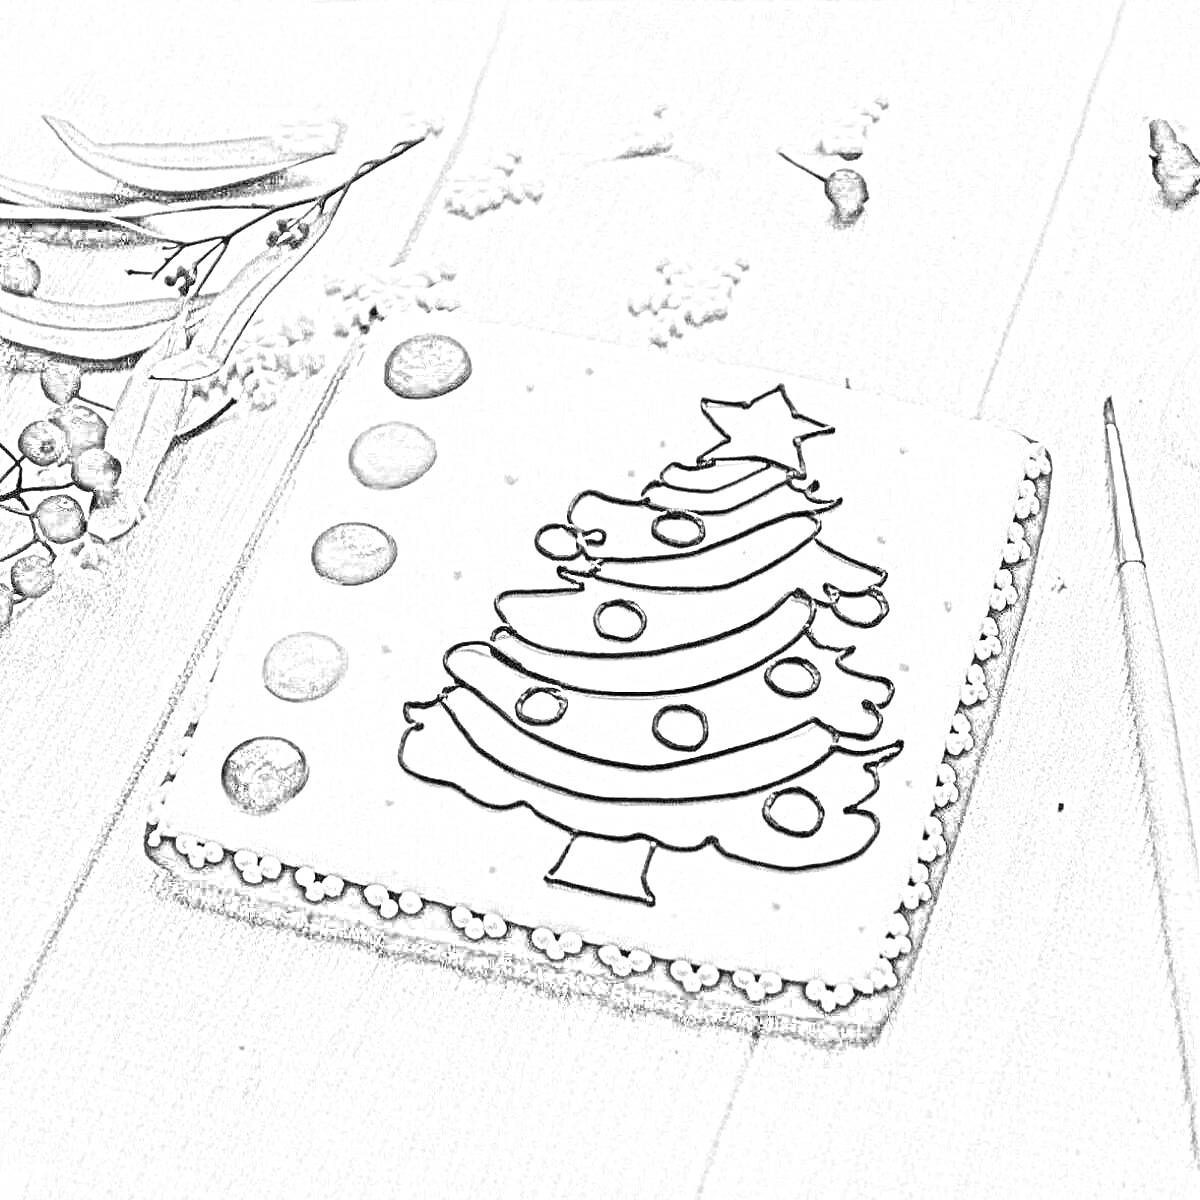 Пряник с ёлочкой на деревянном столе, рядом карандаш, ягоды и елочные ветки